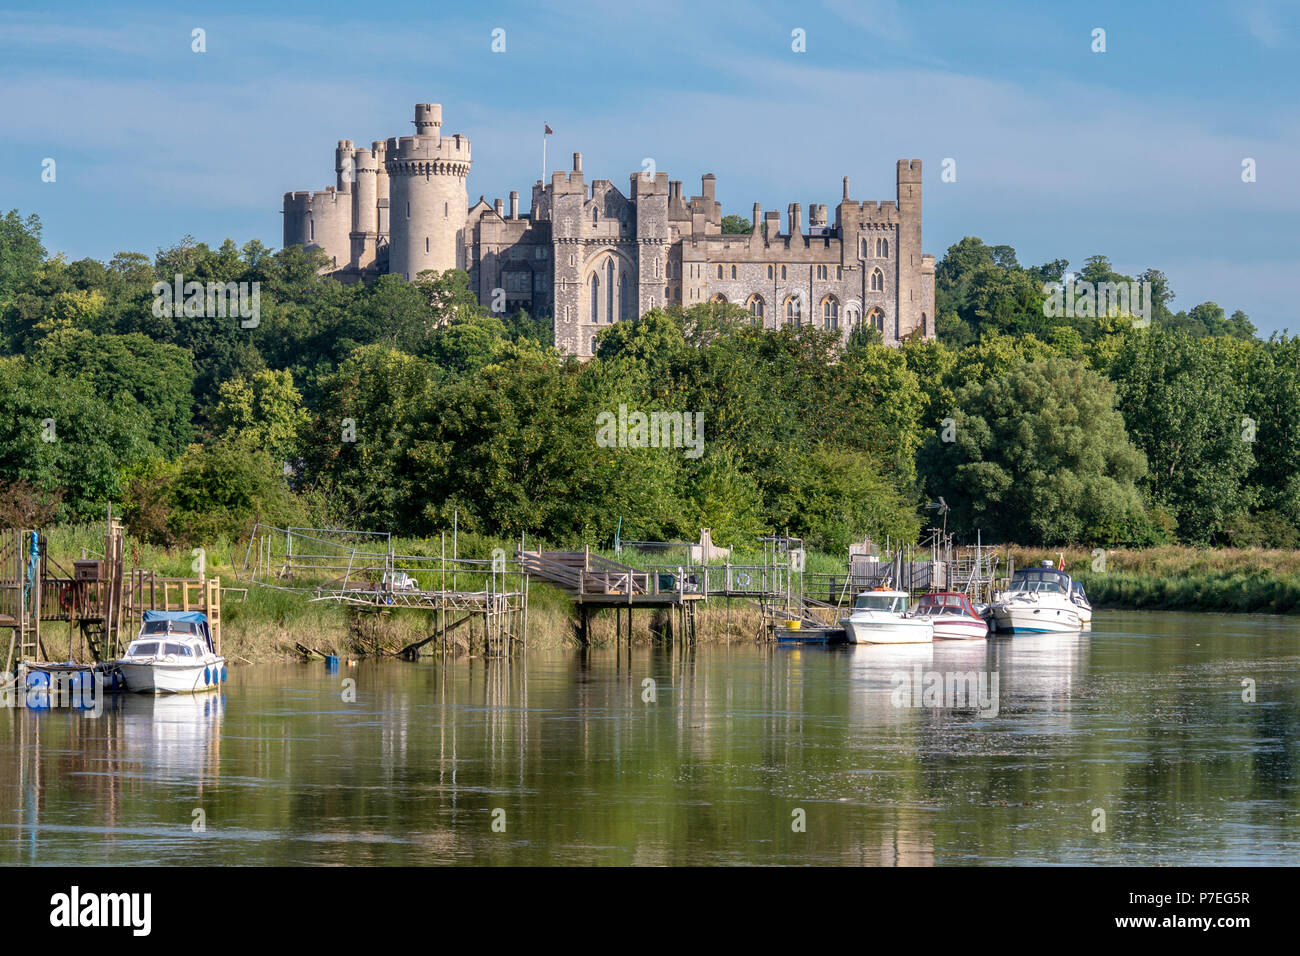 Der Fluss Arun mit Arundel Castle im Hintergrund - Arundel, West Sussex, UK. Stockfoto